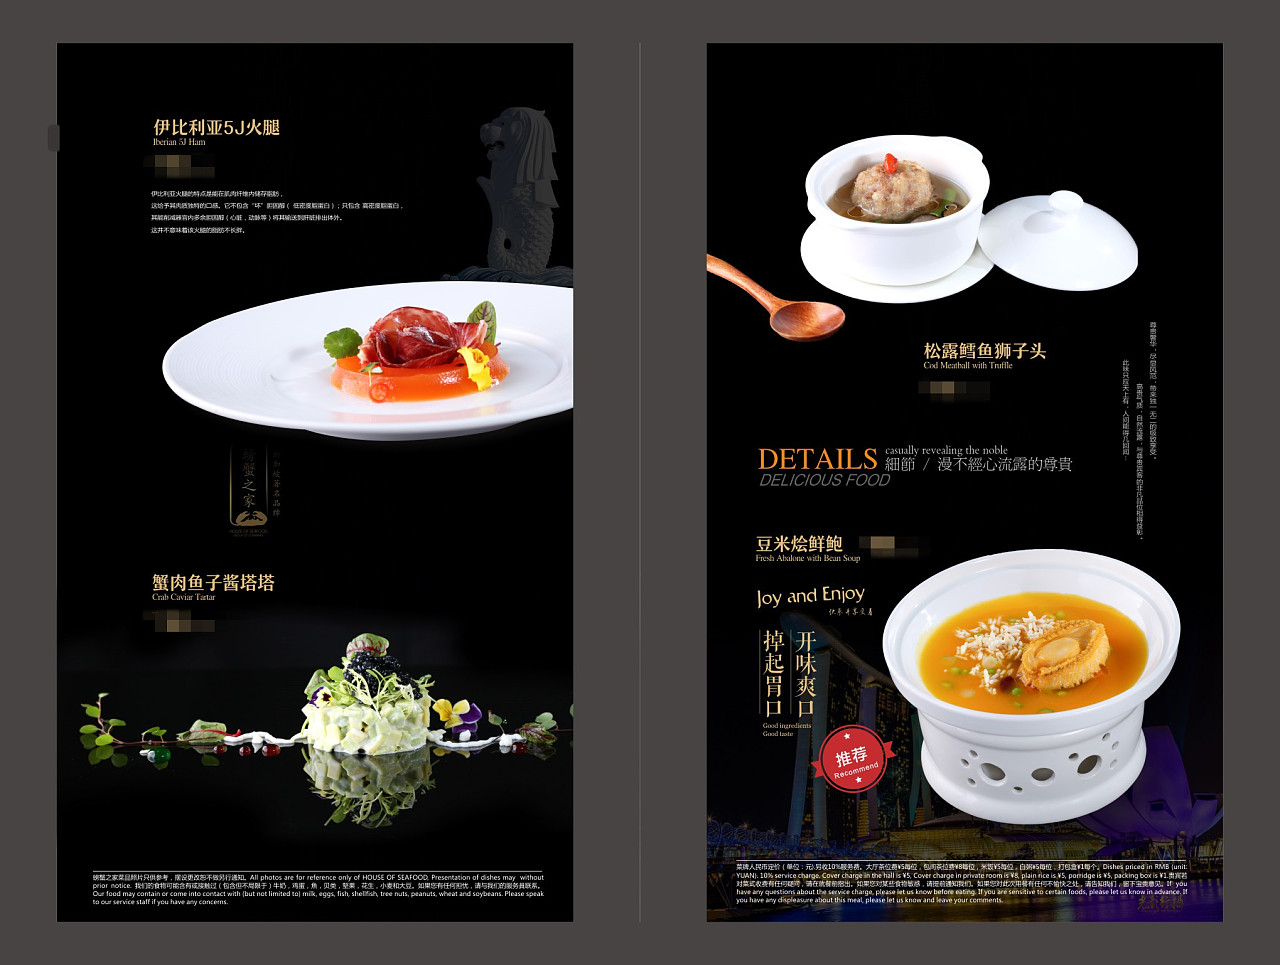 螃蟹之家餐厅菜谱设计制作,商场菜单制作价格,捷达菜谱